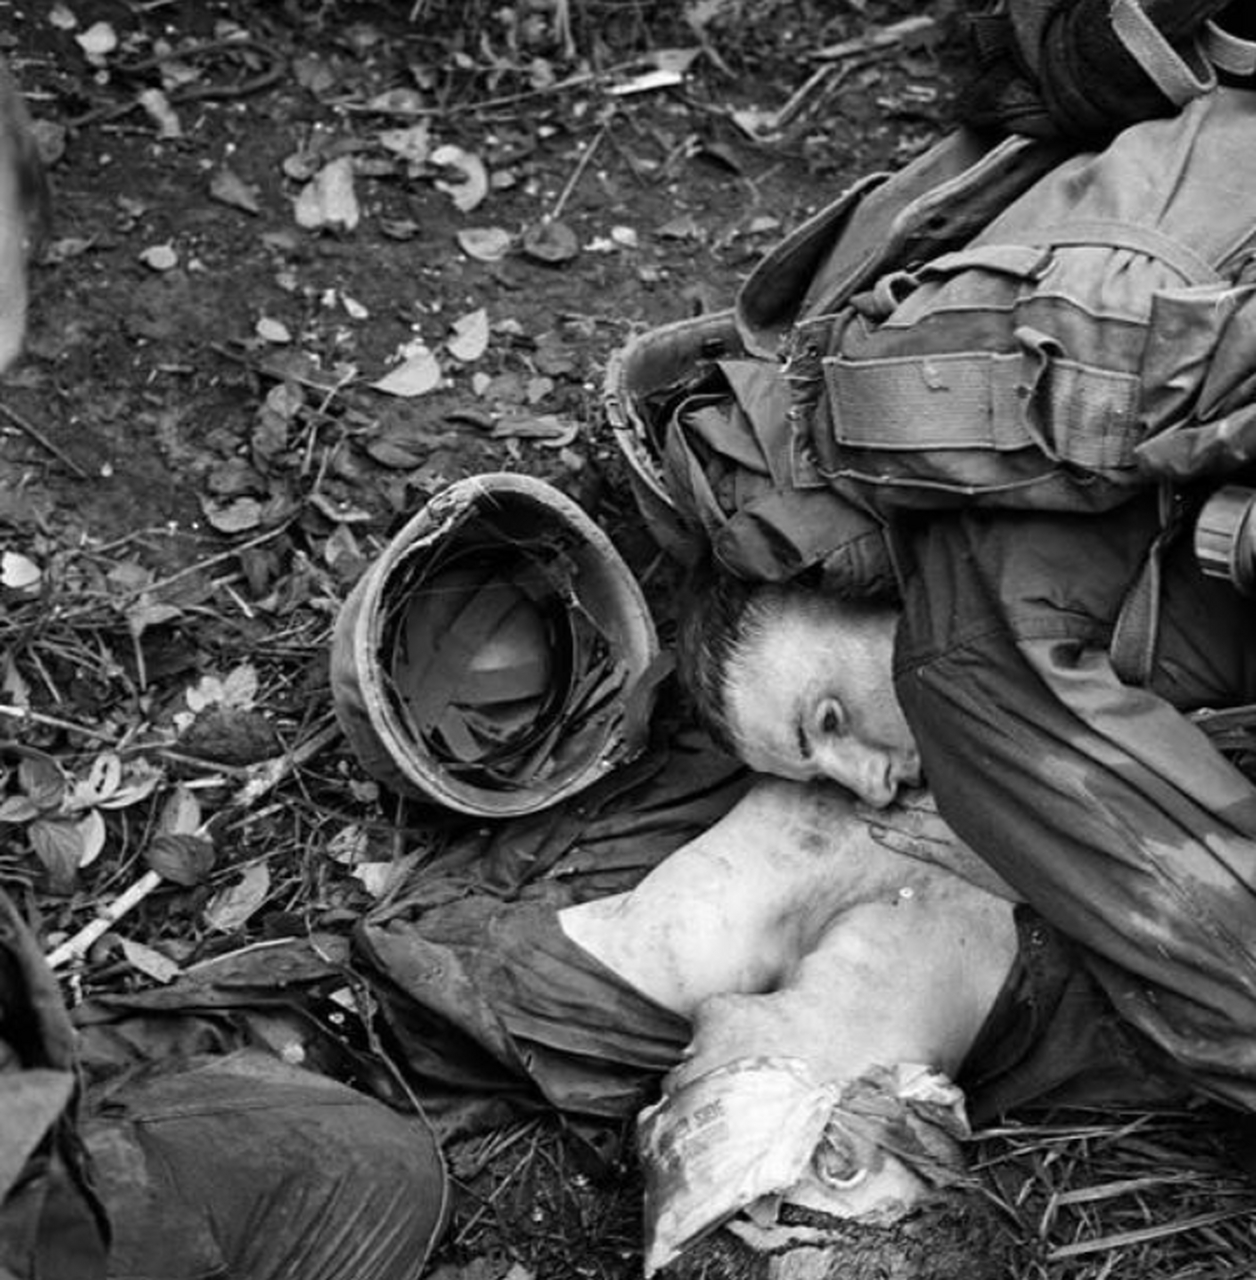 俄乌战场照片,这些足以证明战争是残酷的,世界上还有很多地方的普通人